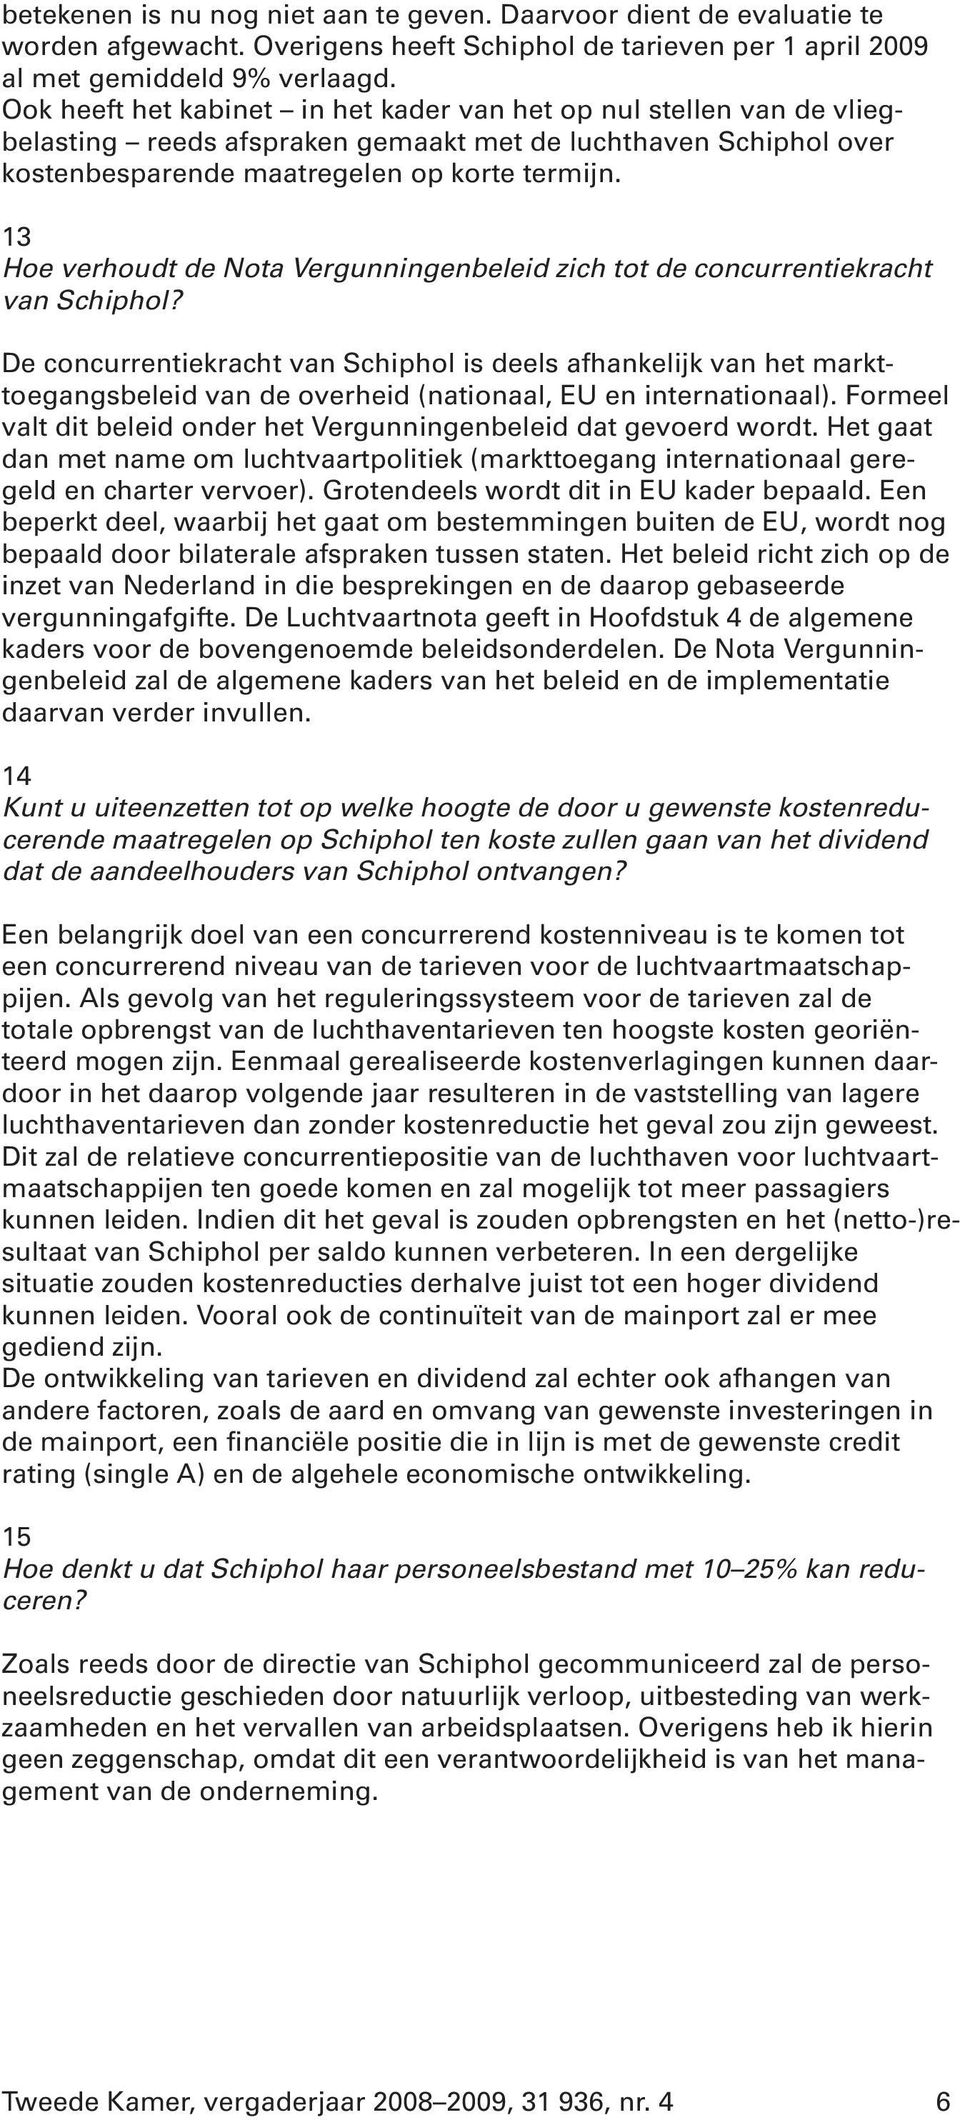 13 Hoe verhoudt de Nota Vergunningenbeleid zich tot de concurrentiekracht van Schiphol?